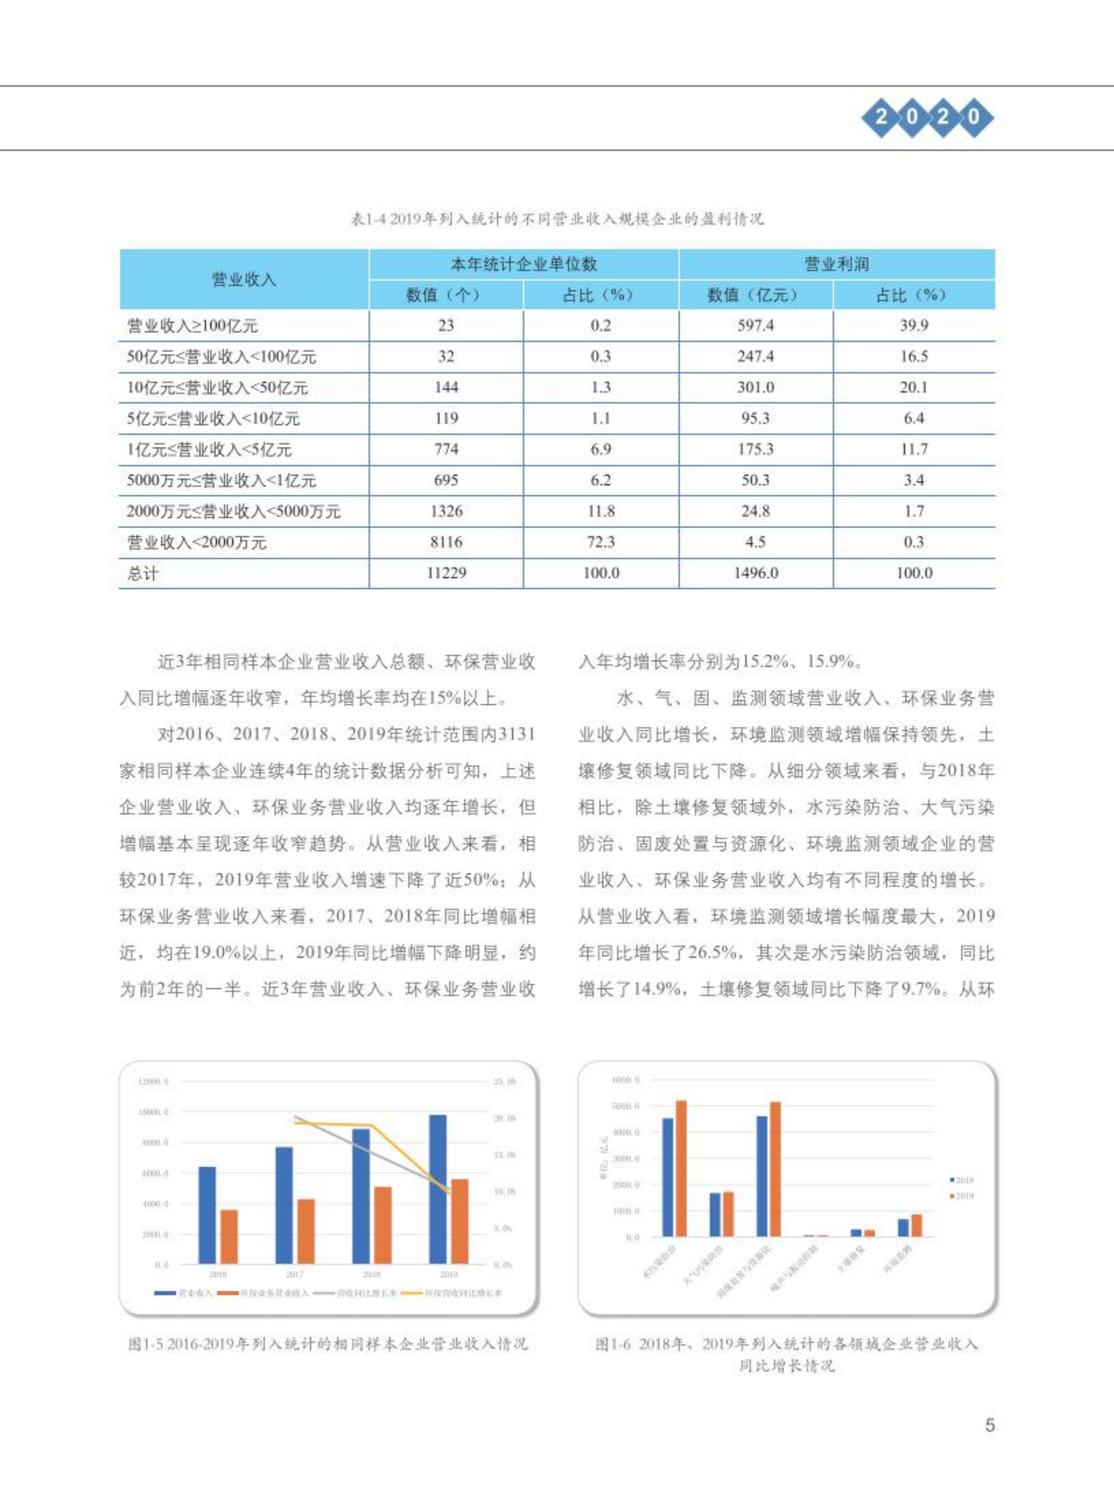 【2020】中国环保产业发展状况报告_06.png